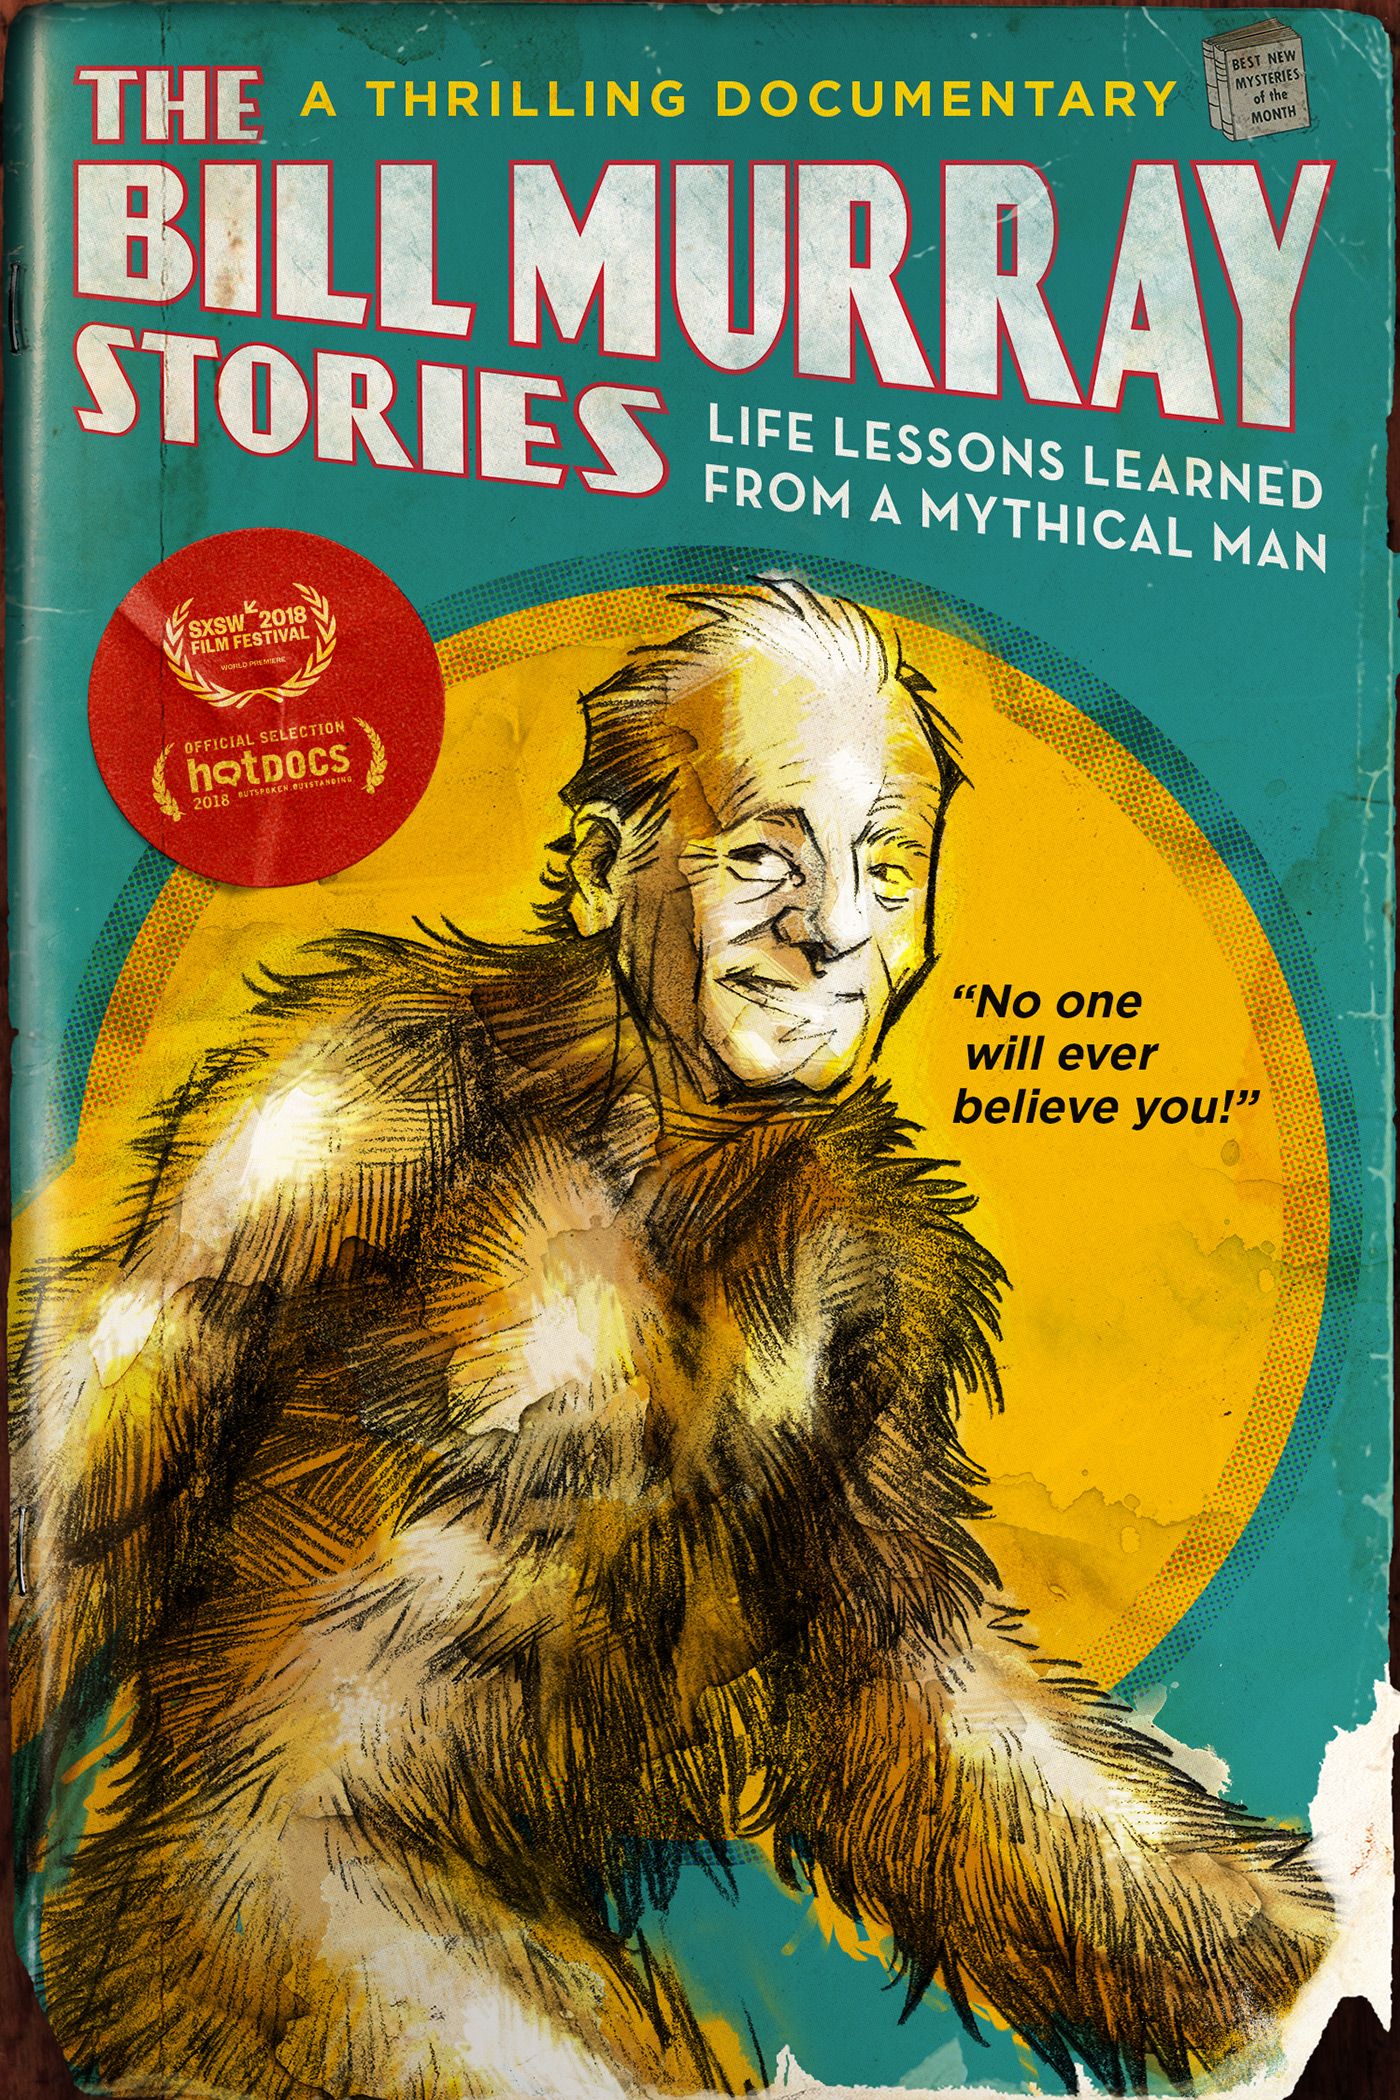 Bill Murray Stories trailer